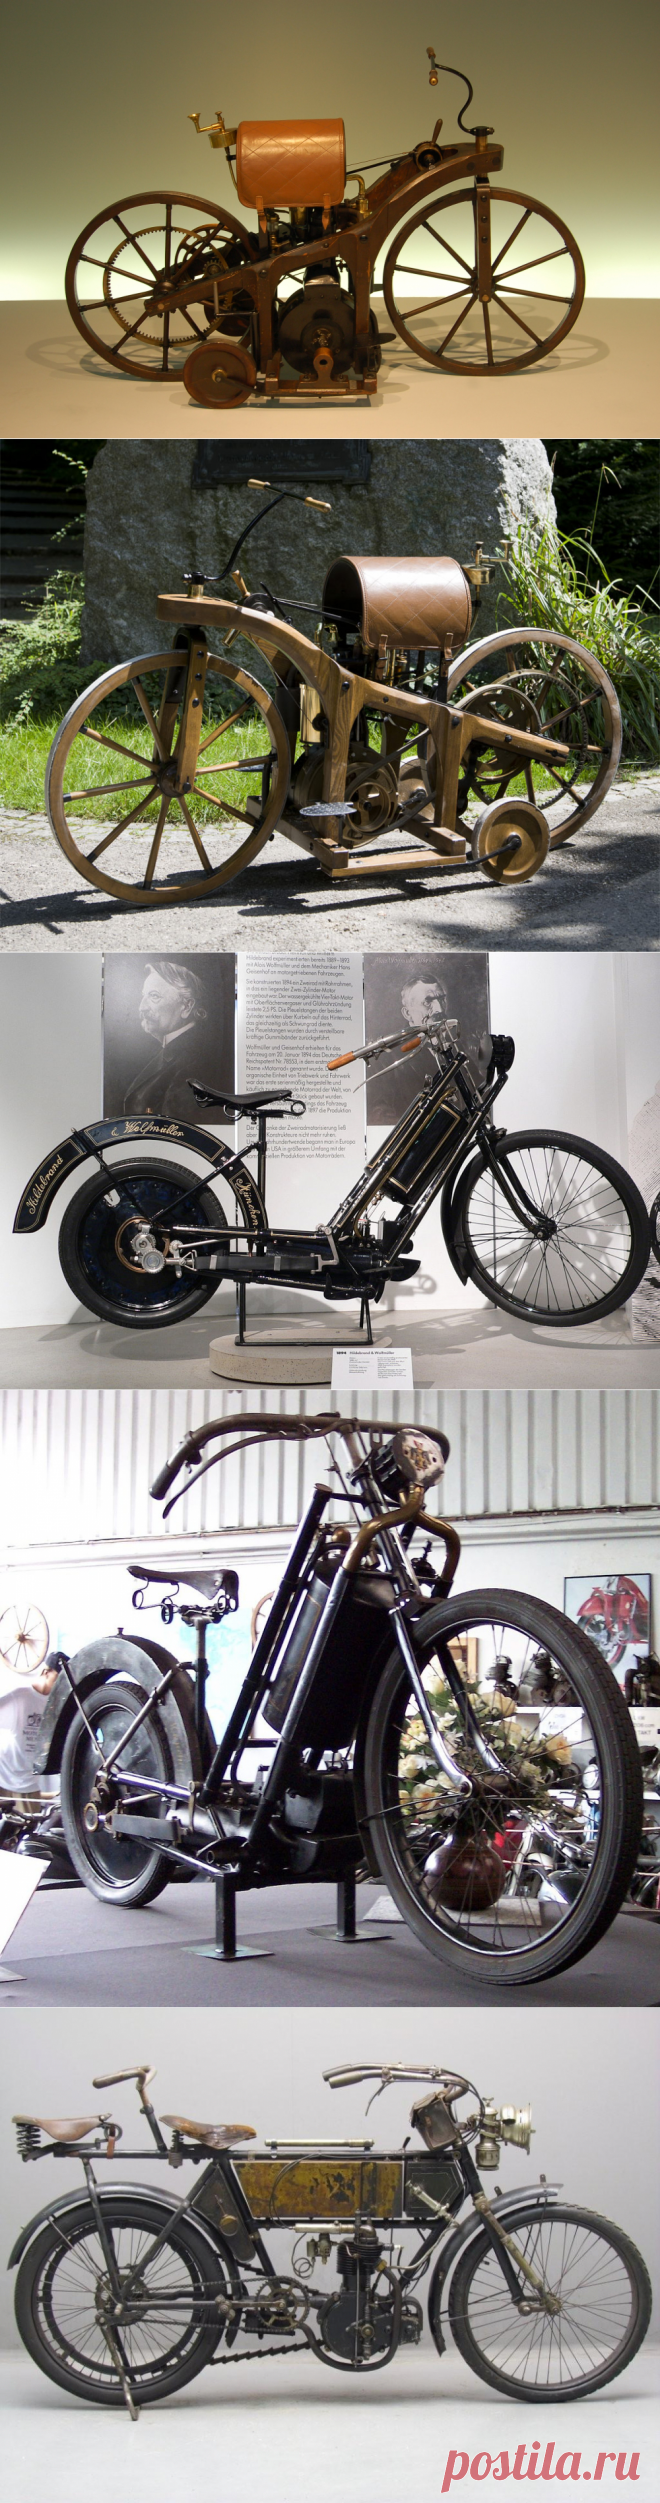 Как выглядели первые мотоциклы в истории?